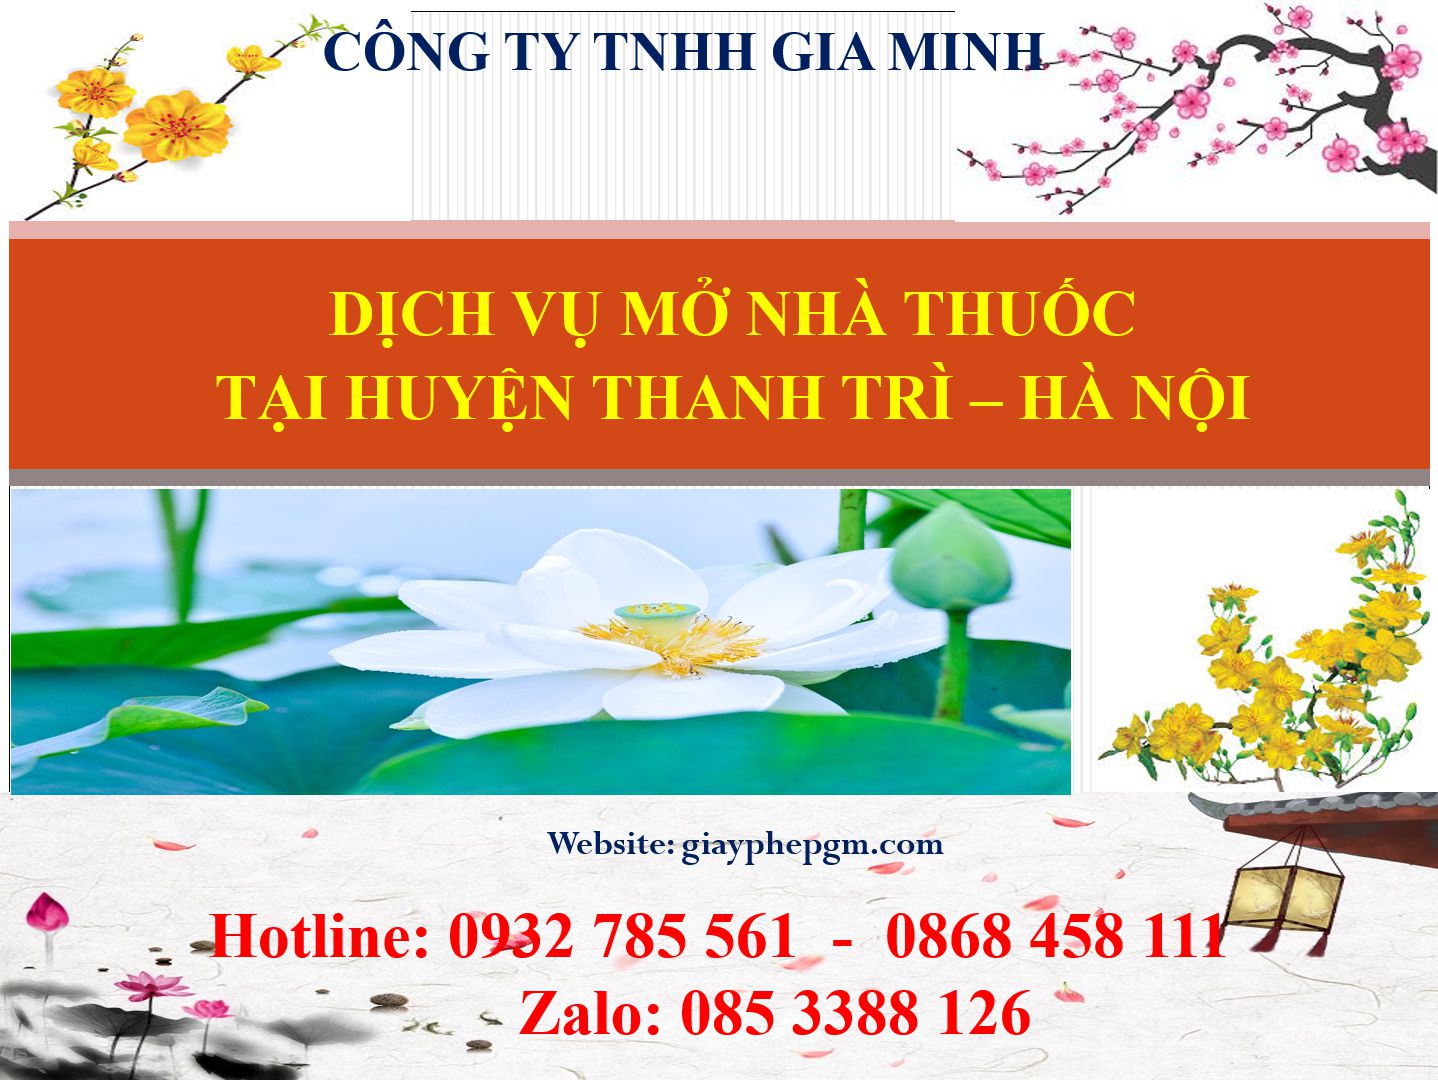 Dịch vụ mở nhà thuốc tại Huyện Thanh Trì - Hà Nội